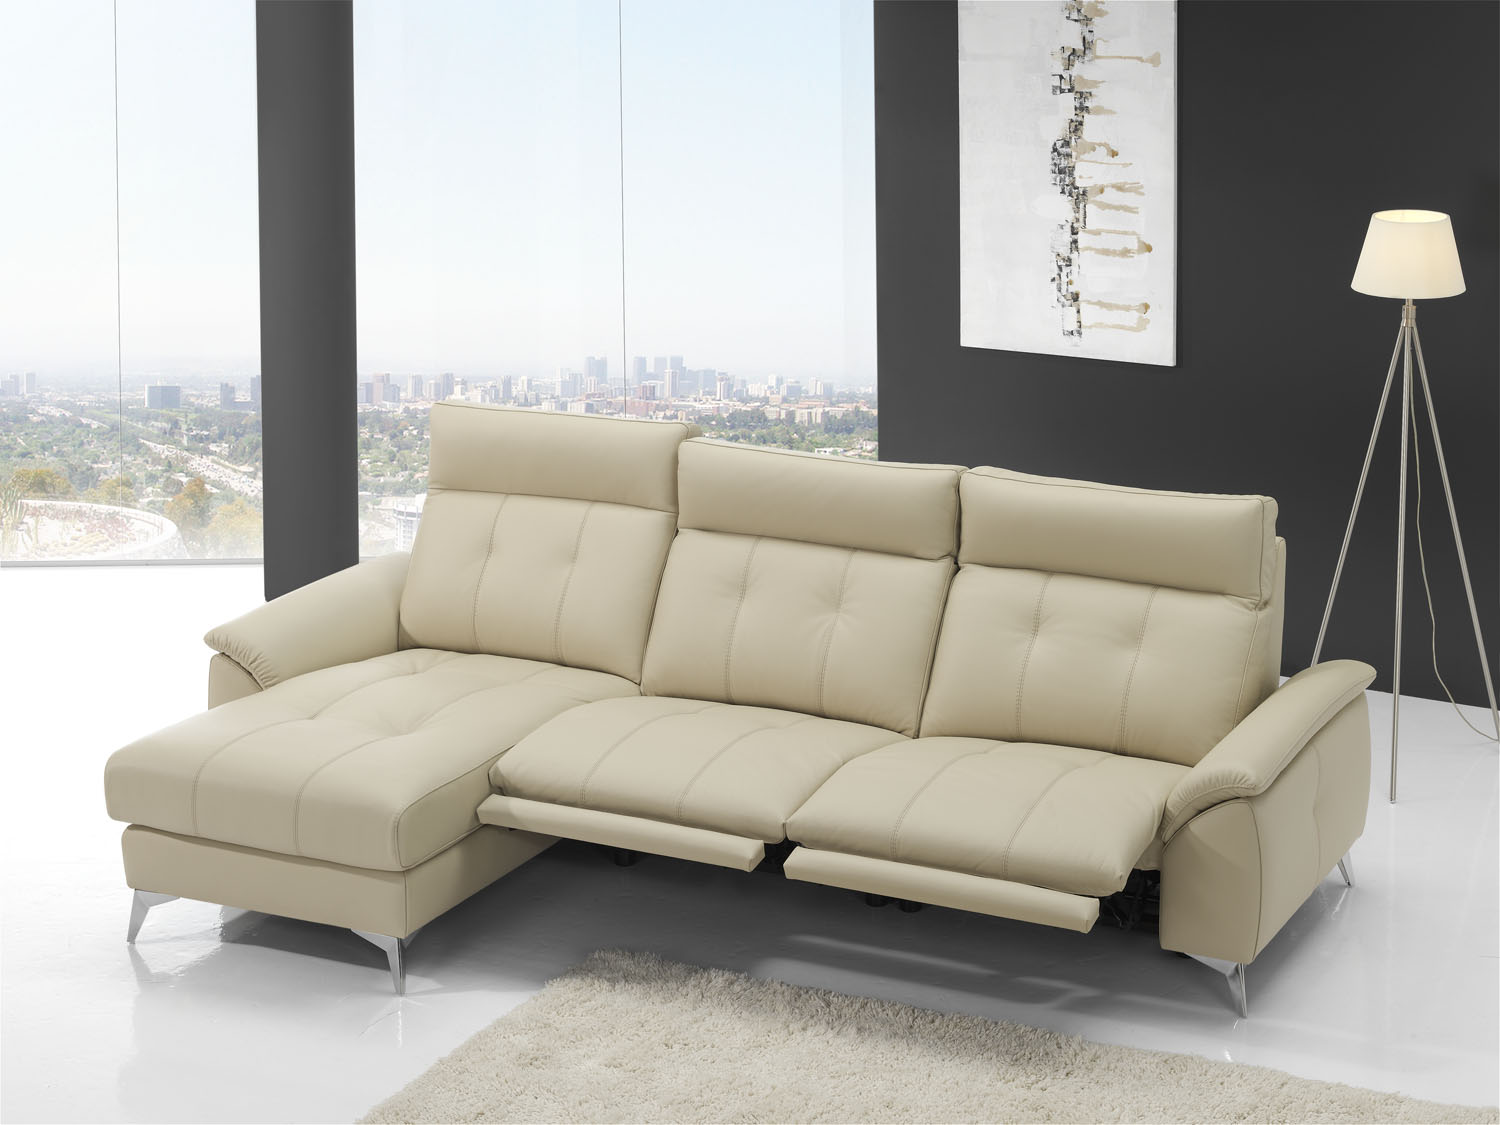 Sofás modernos o sofás clásicos: ¿qué opción es mejor para tu salón?